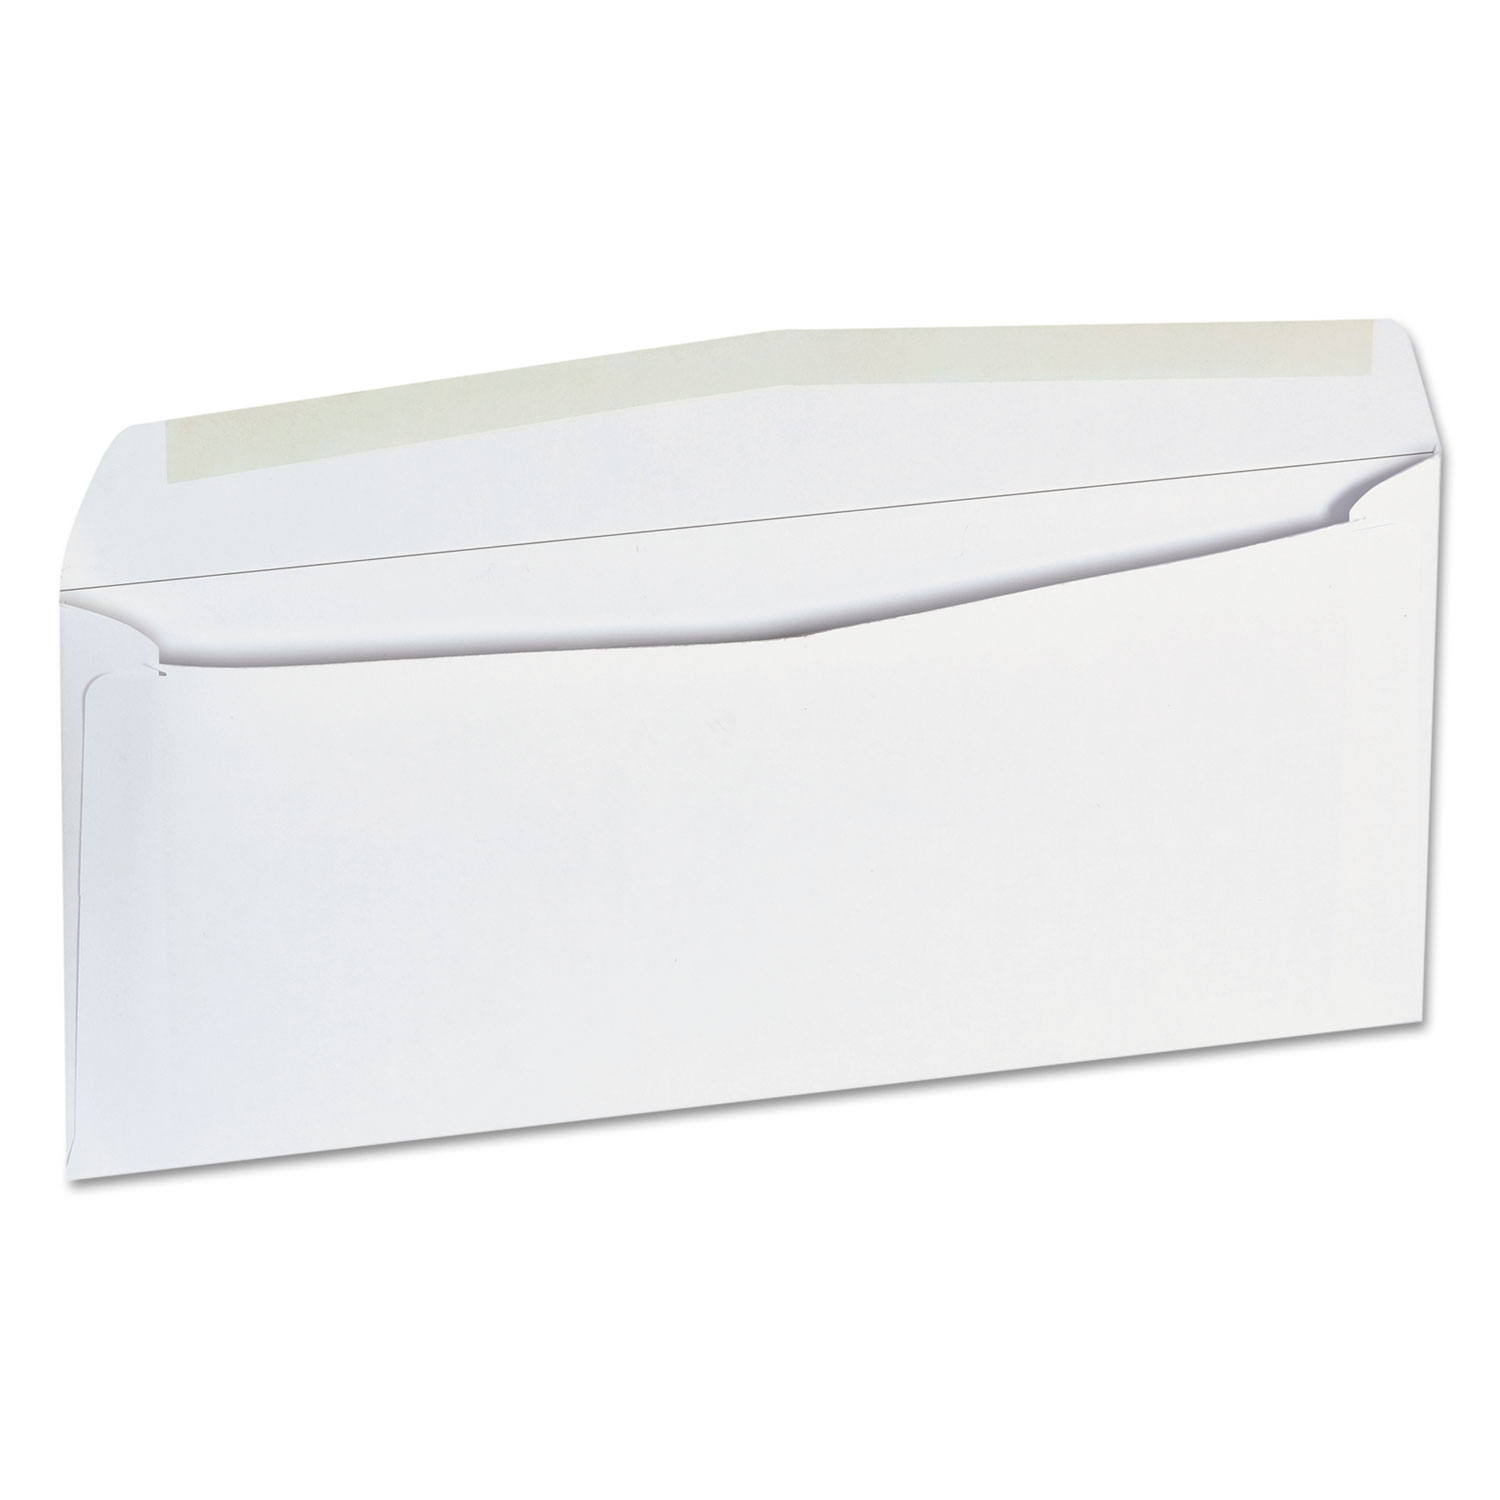  Universal UNV35209 Business Envelope, #9, Squar Flap, Gummed Closure, 3.88 x 8.88, White, 500/Box (UNV35209) 